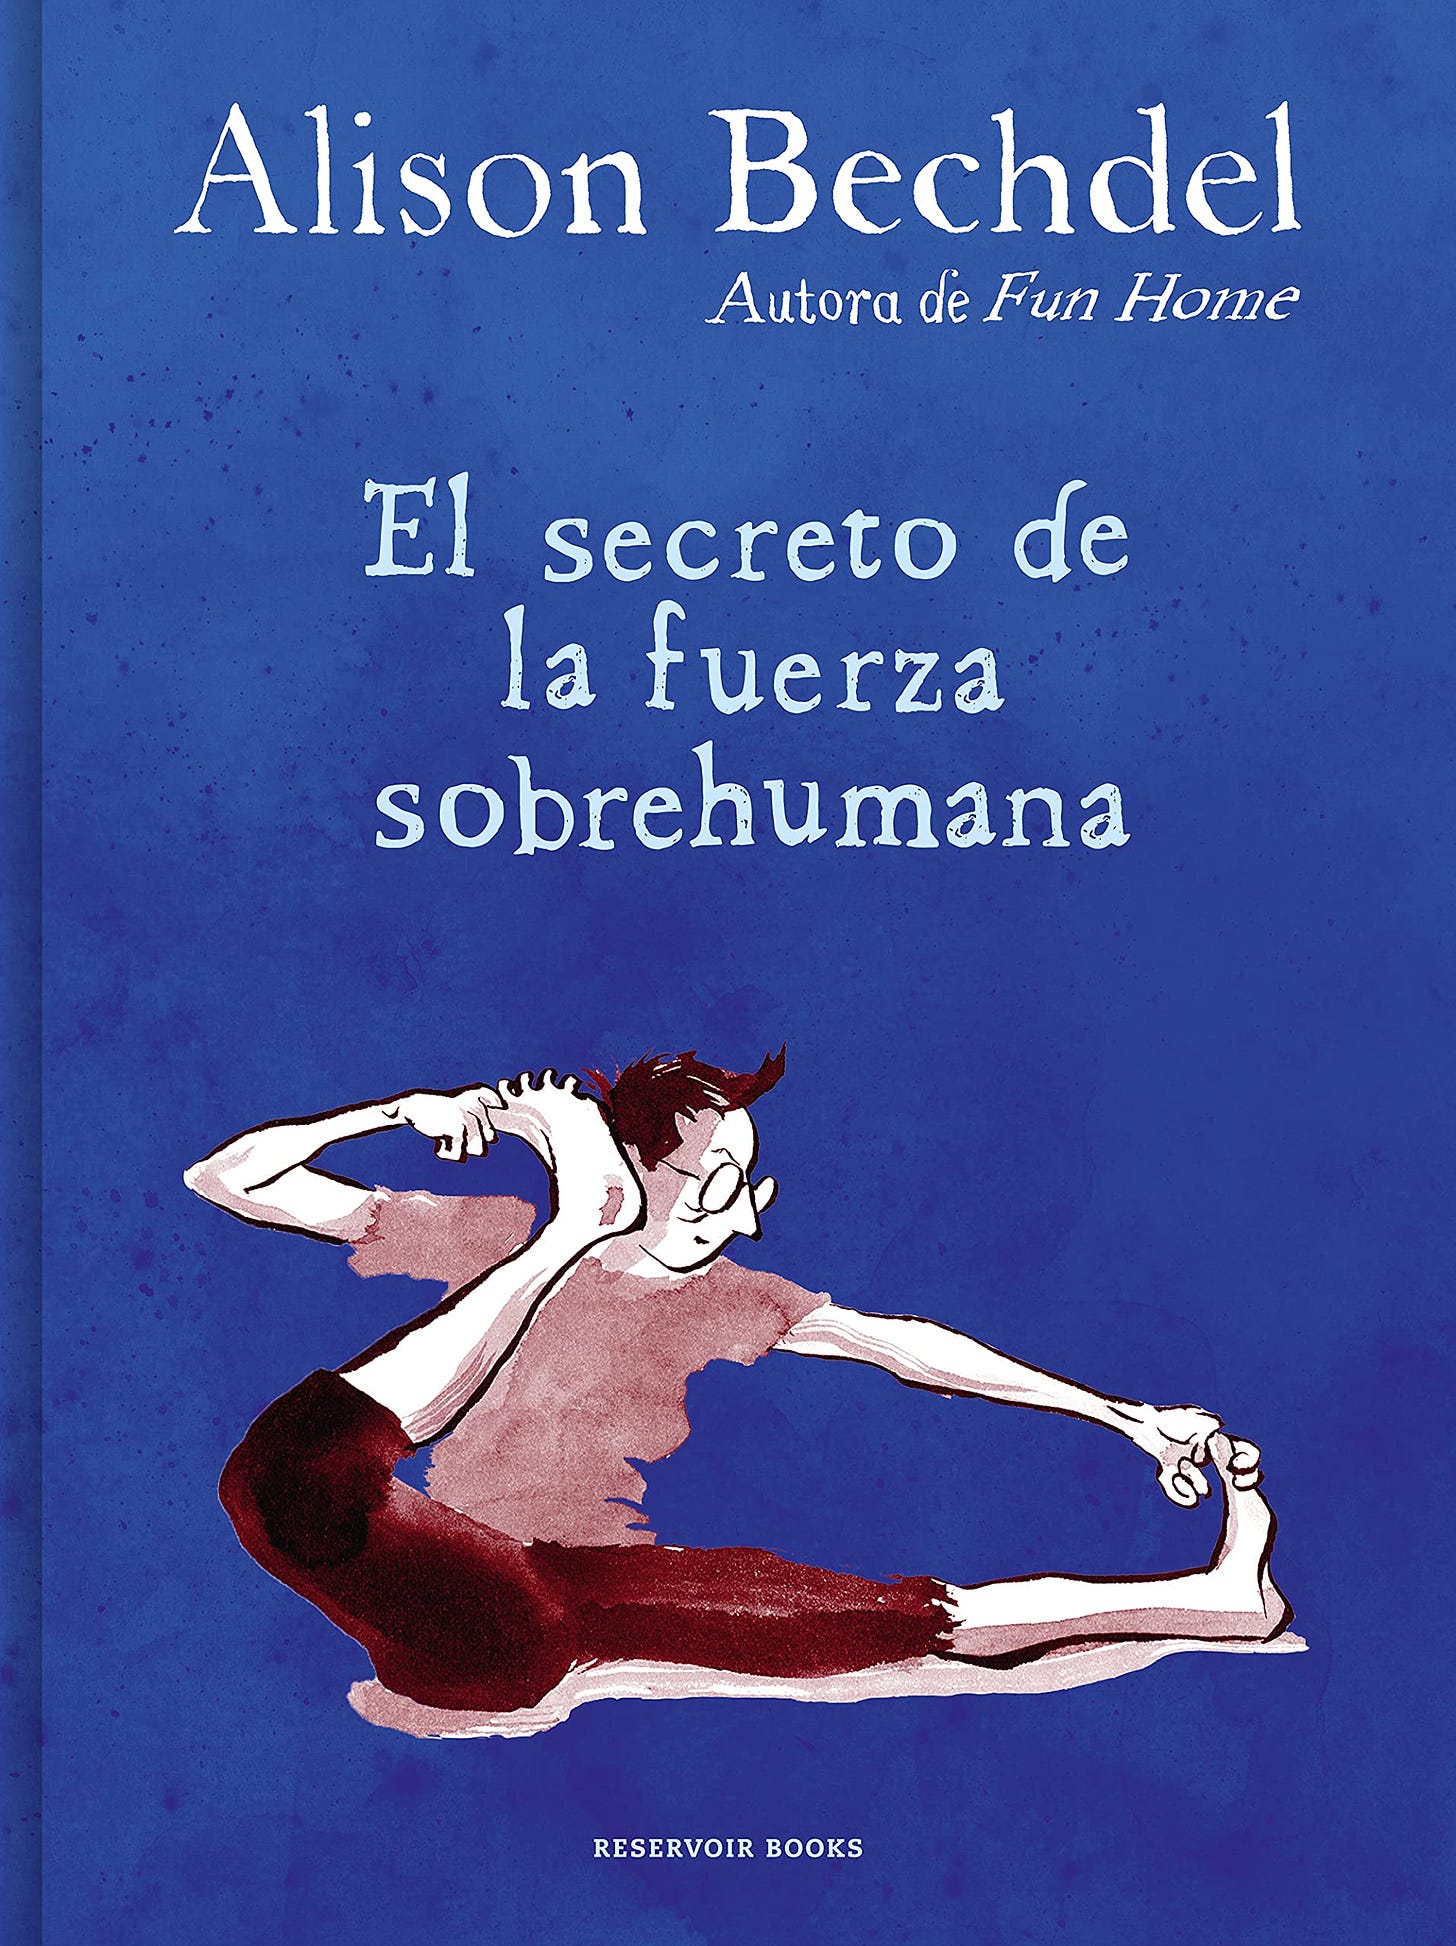 El secreto de la fuerza sobrehumana (Reservoir Gráfica) : Bechdel, Alison,  de la Maya Retamar, Rocío: Amazon.es: Libros